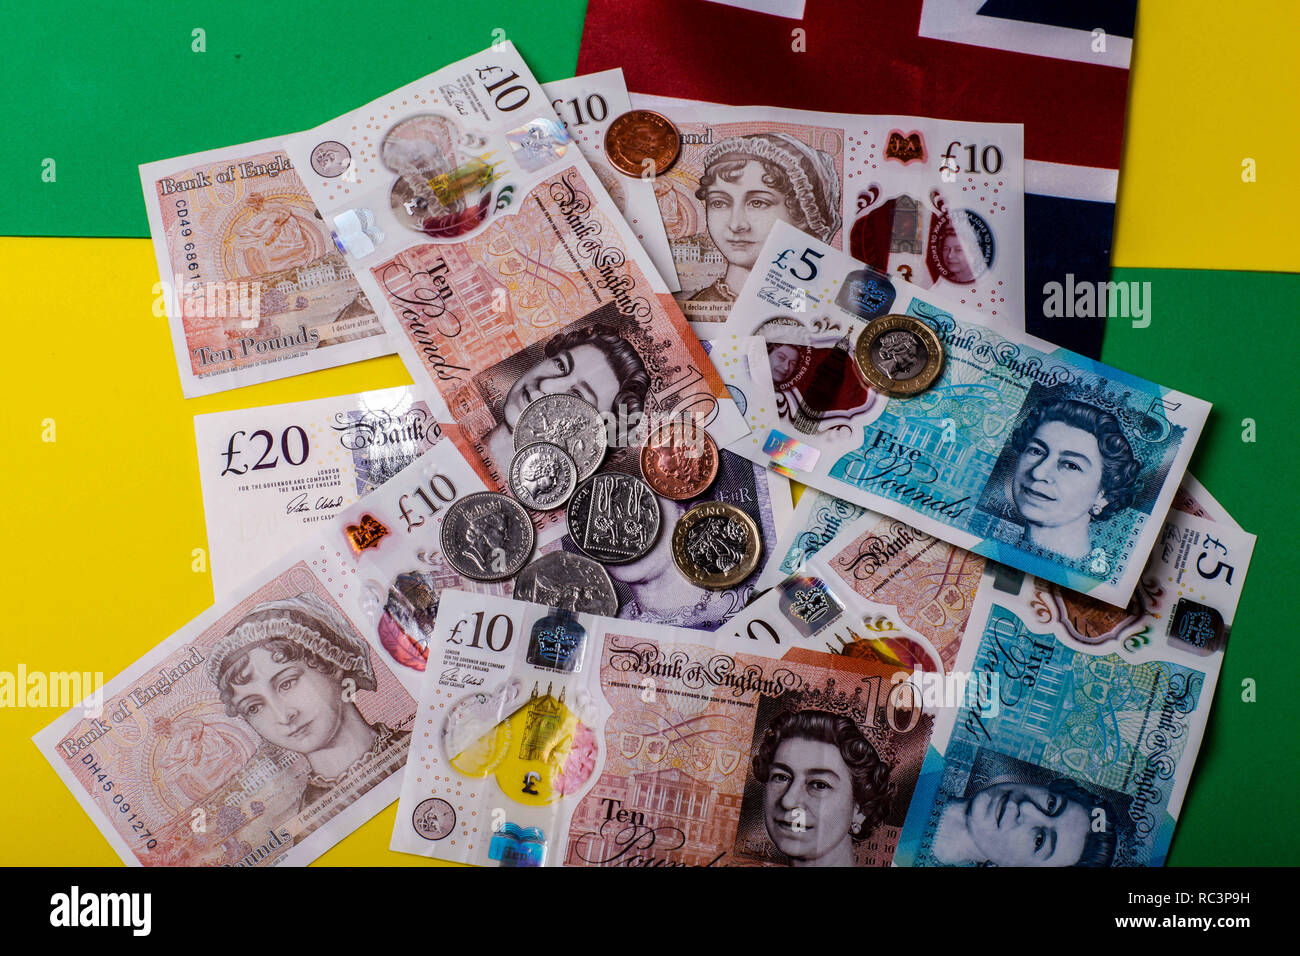 Dicembre 17, 2018 - La lira sterlina, il cui simbolo è Â£, è la valuta ufficiale del Regno Unito ed è il terzo più negoziate in moneta nel mercato degli cambi esteri dopo il dollaro e l'euro. Una lira sterlina è fatta di 100 pence Credito: Shane Wsilly/IMAGESLIVE/ZUMA filo/Alamy Live News Foto Stock